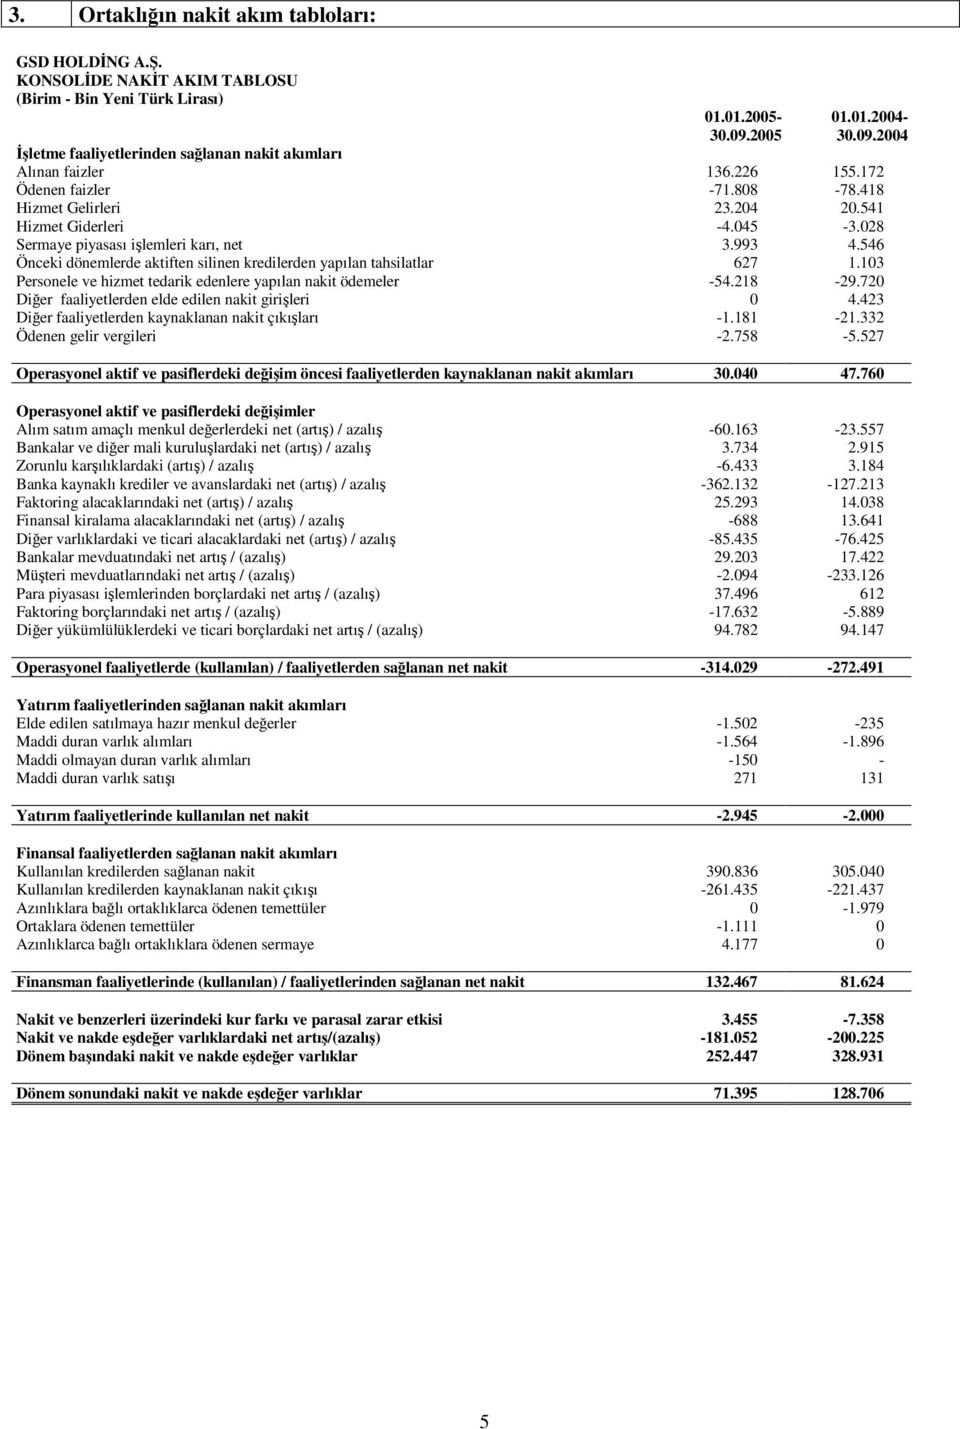 028 Sermaye piyasası ilemleri karı, net 3.993 4.546 Önceki dönemlerde aktiften silinen kredilerden yapılan tahsilatlar 627 1.103 Personele ve hizmet tedarik edenlere yapılan nakit ödemeler -54.218-29.